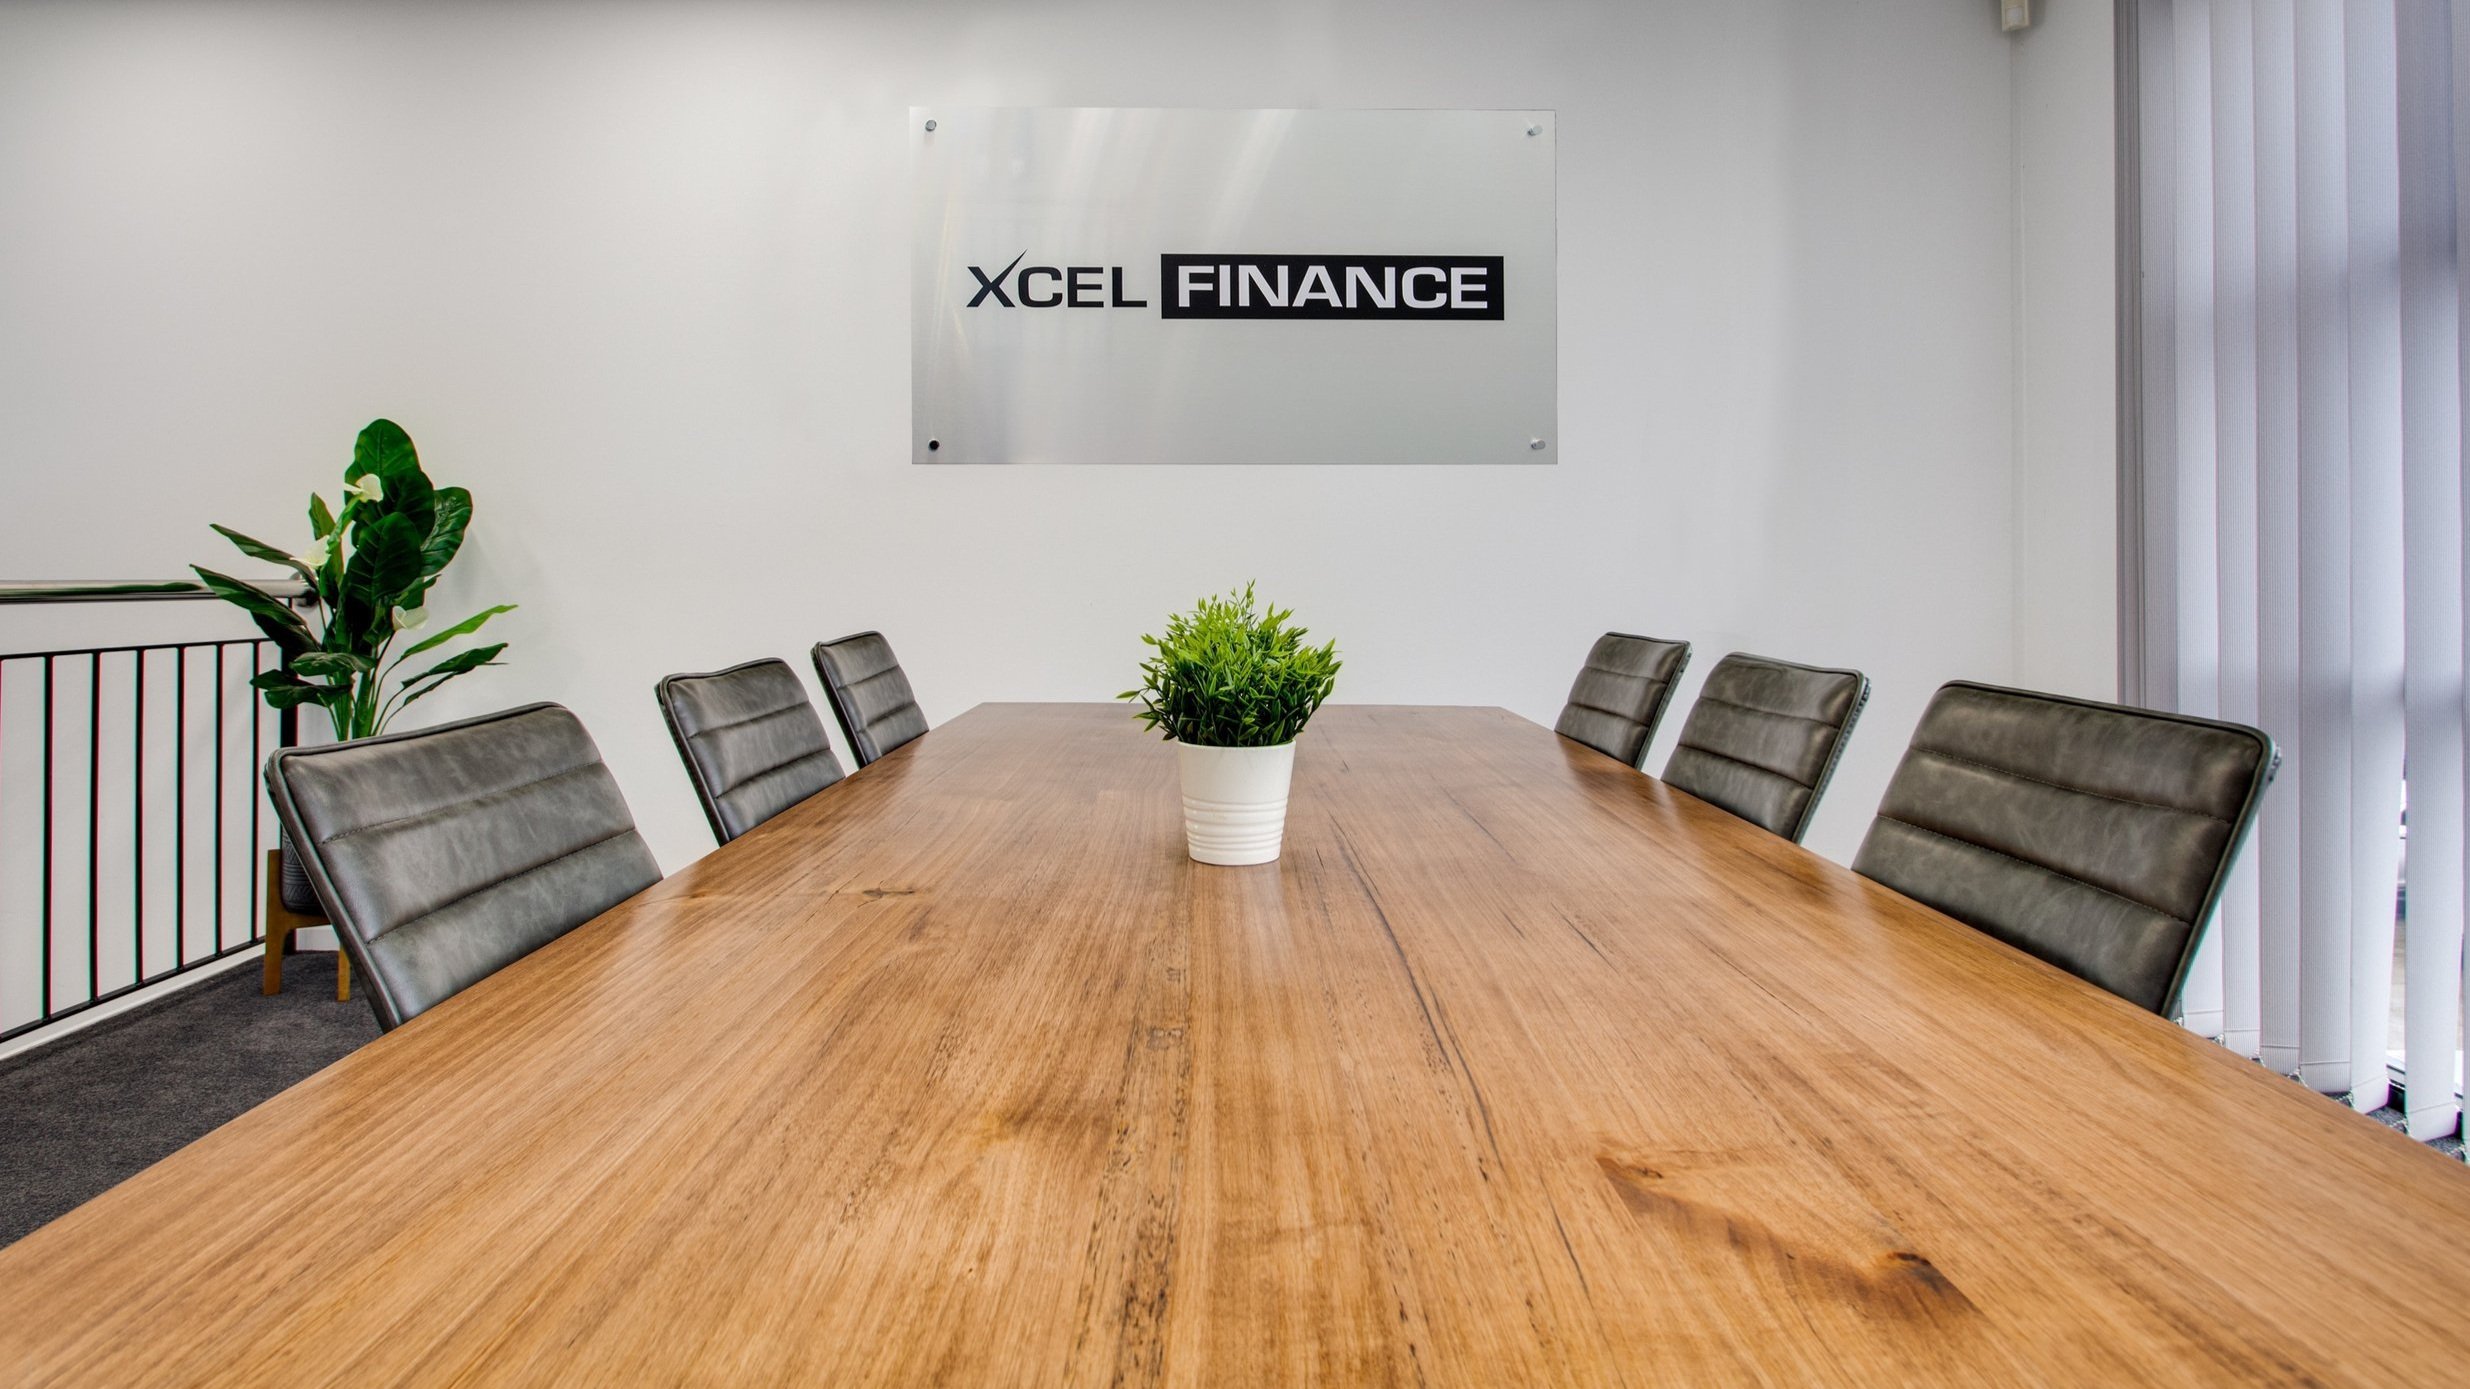 XCEL Finance